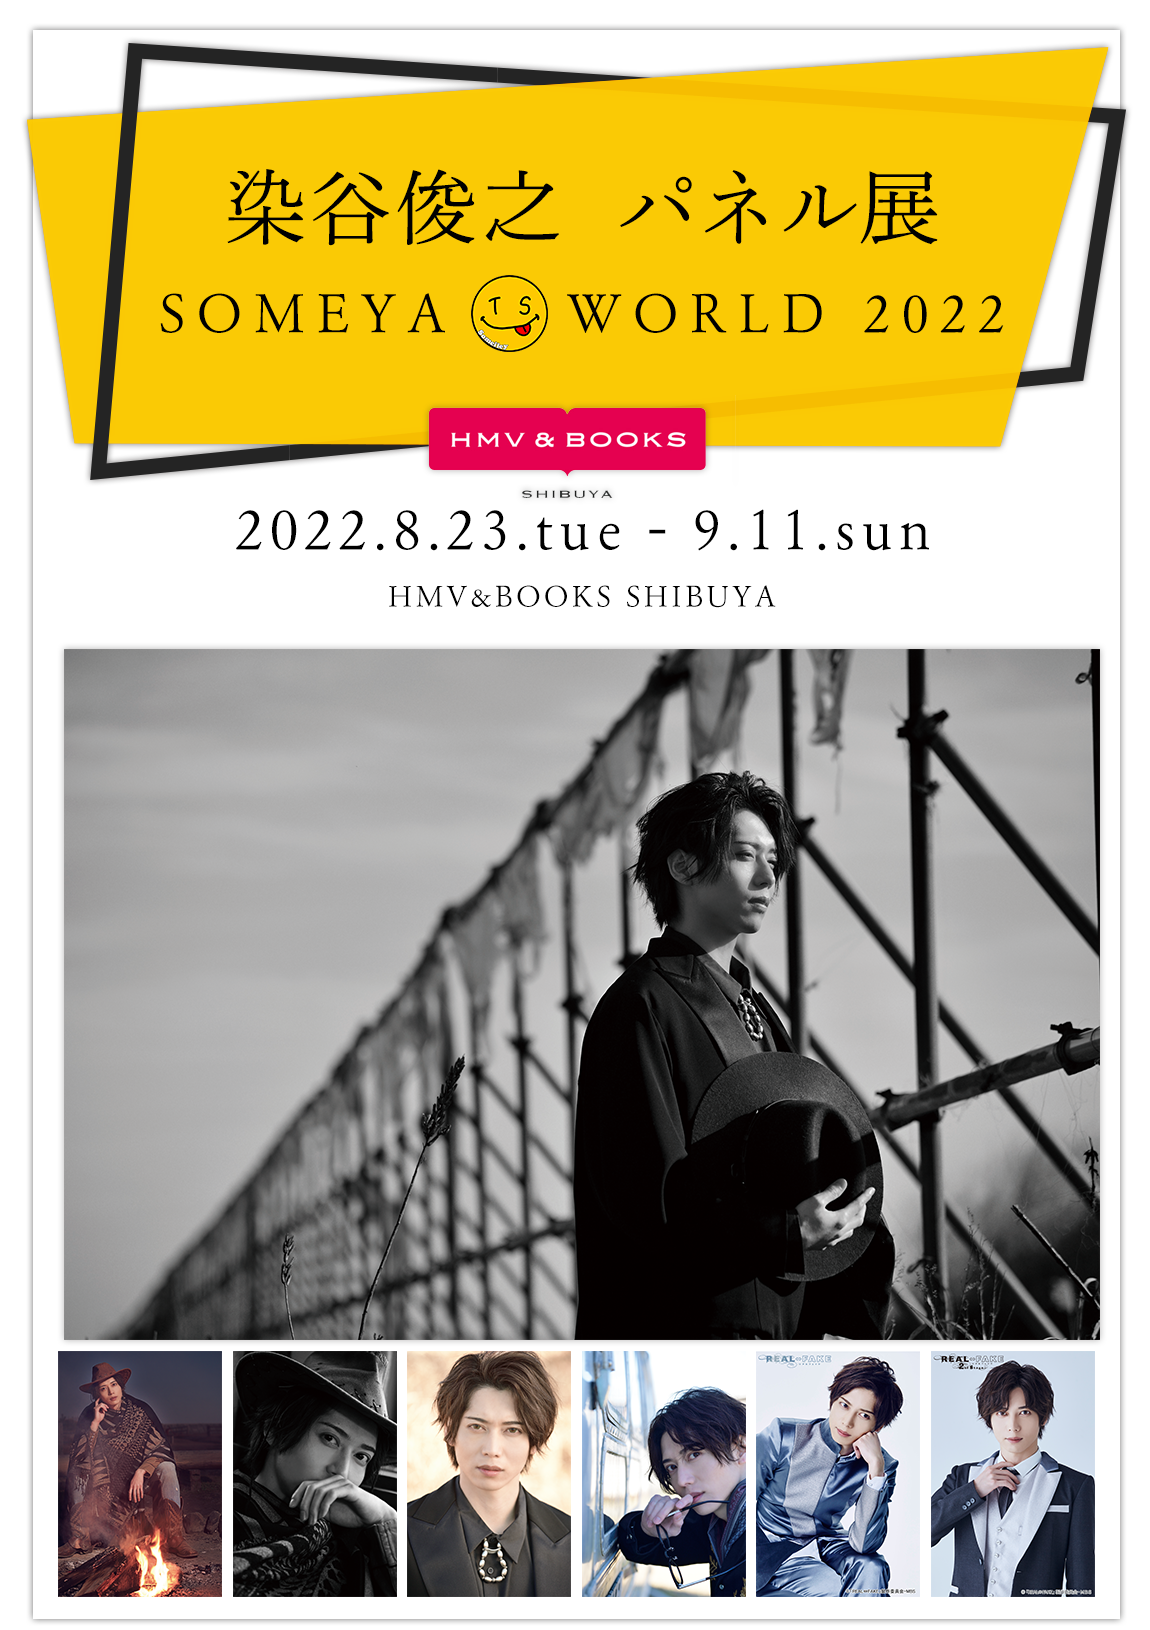 染谷俊之 パネル展 SOMEYA WORLD 2022』 開催記念イベント開催|